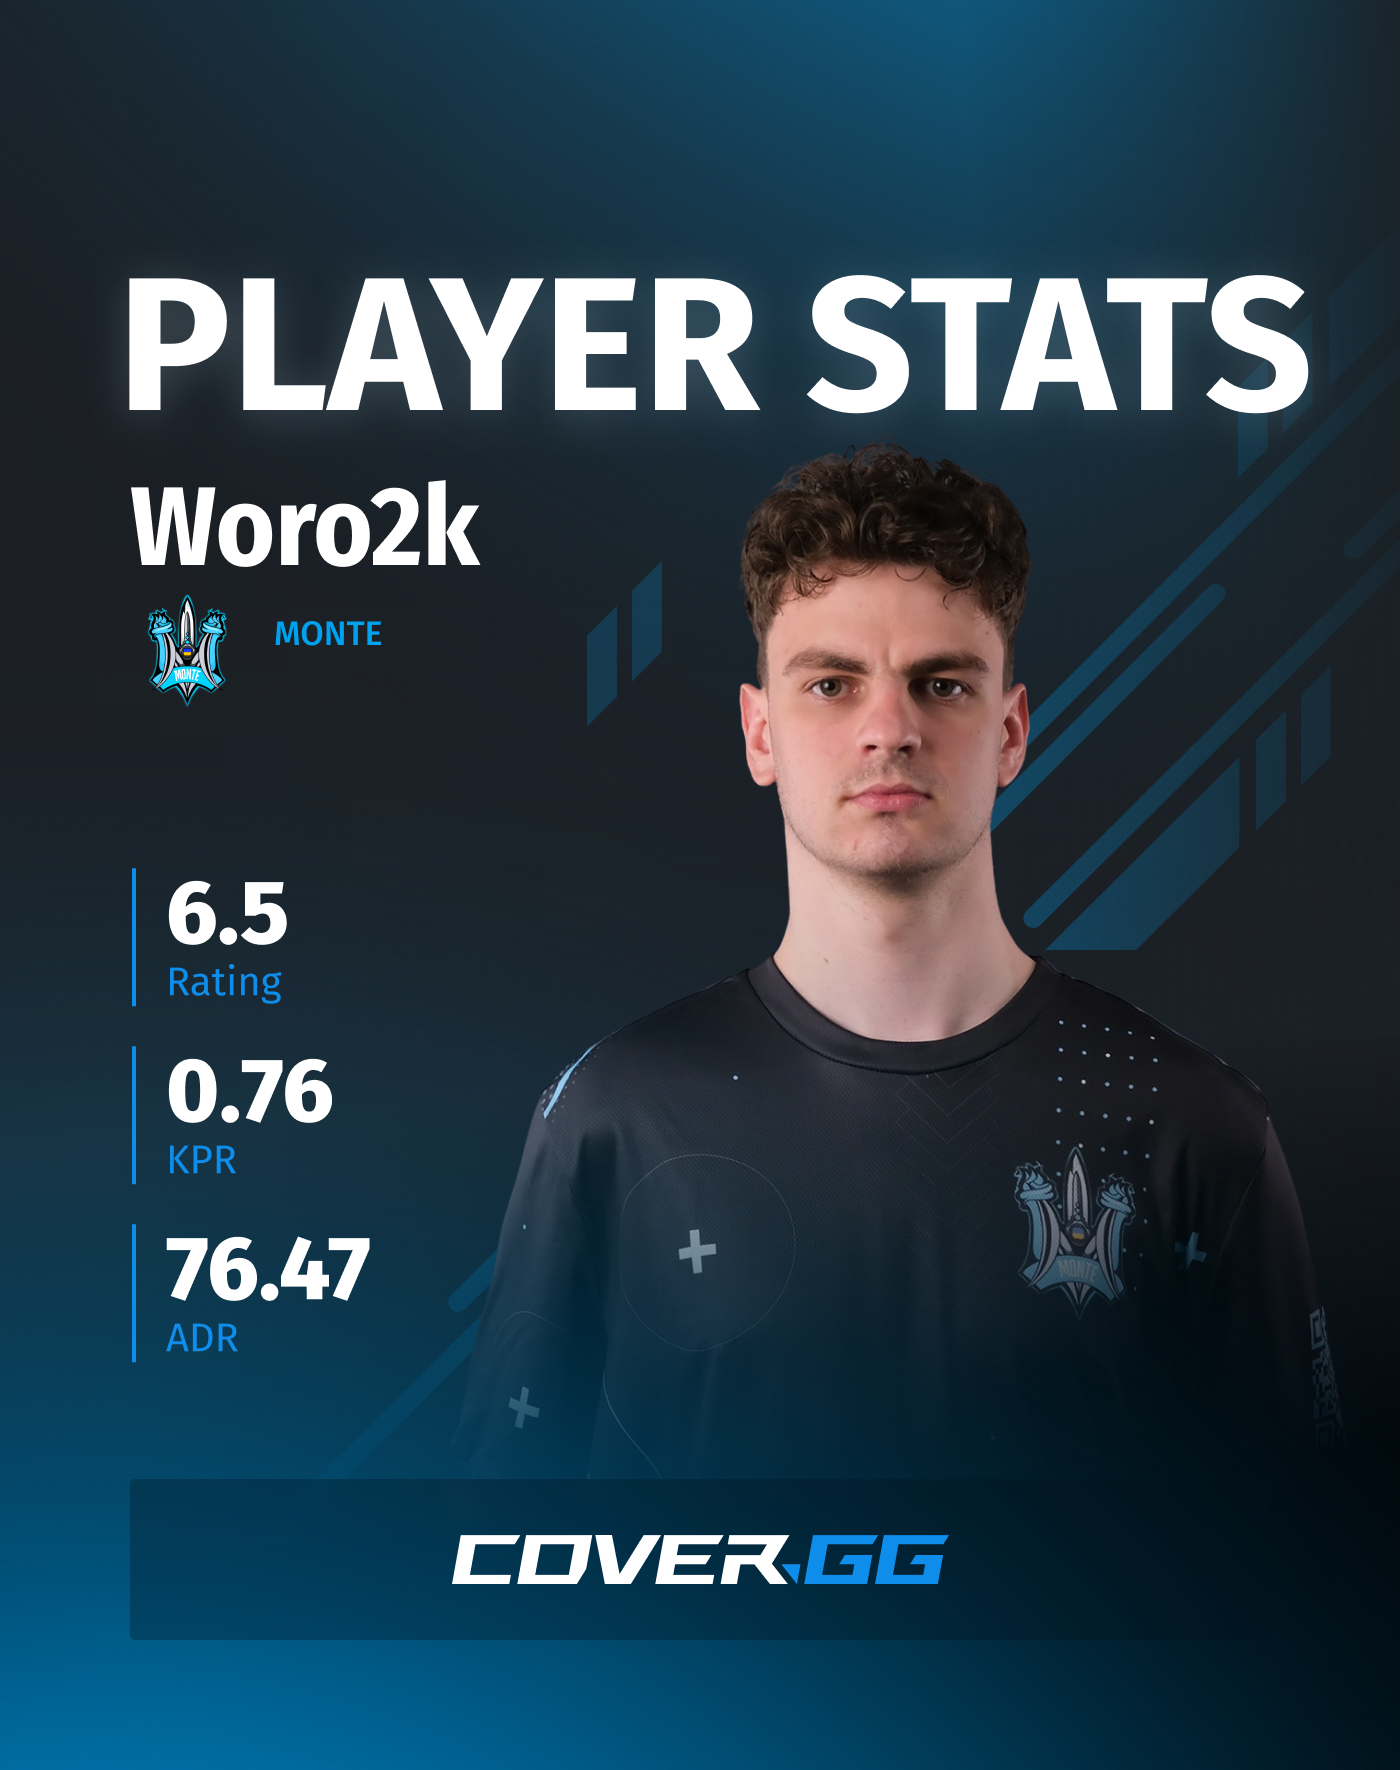 Woro2k's stats